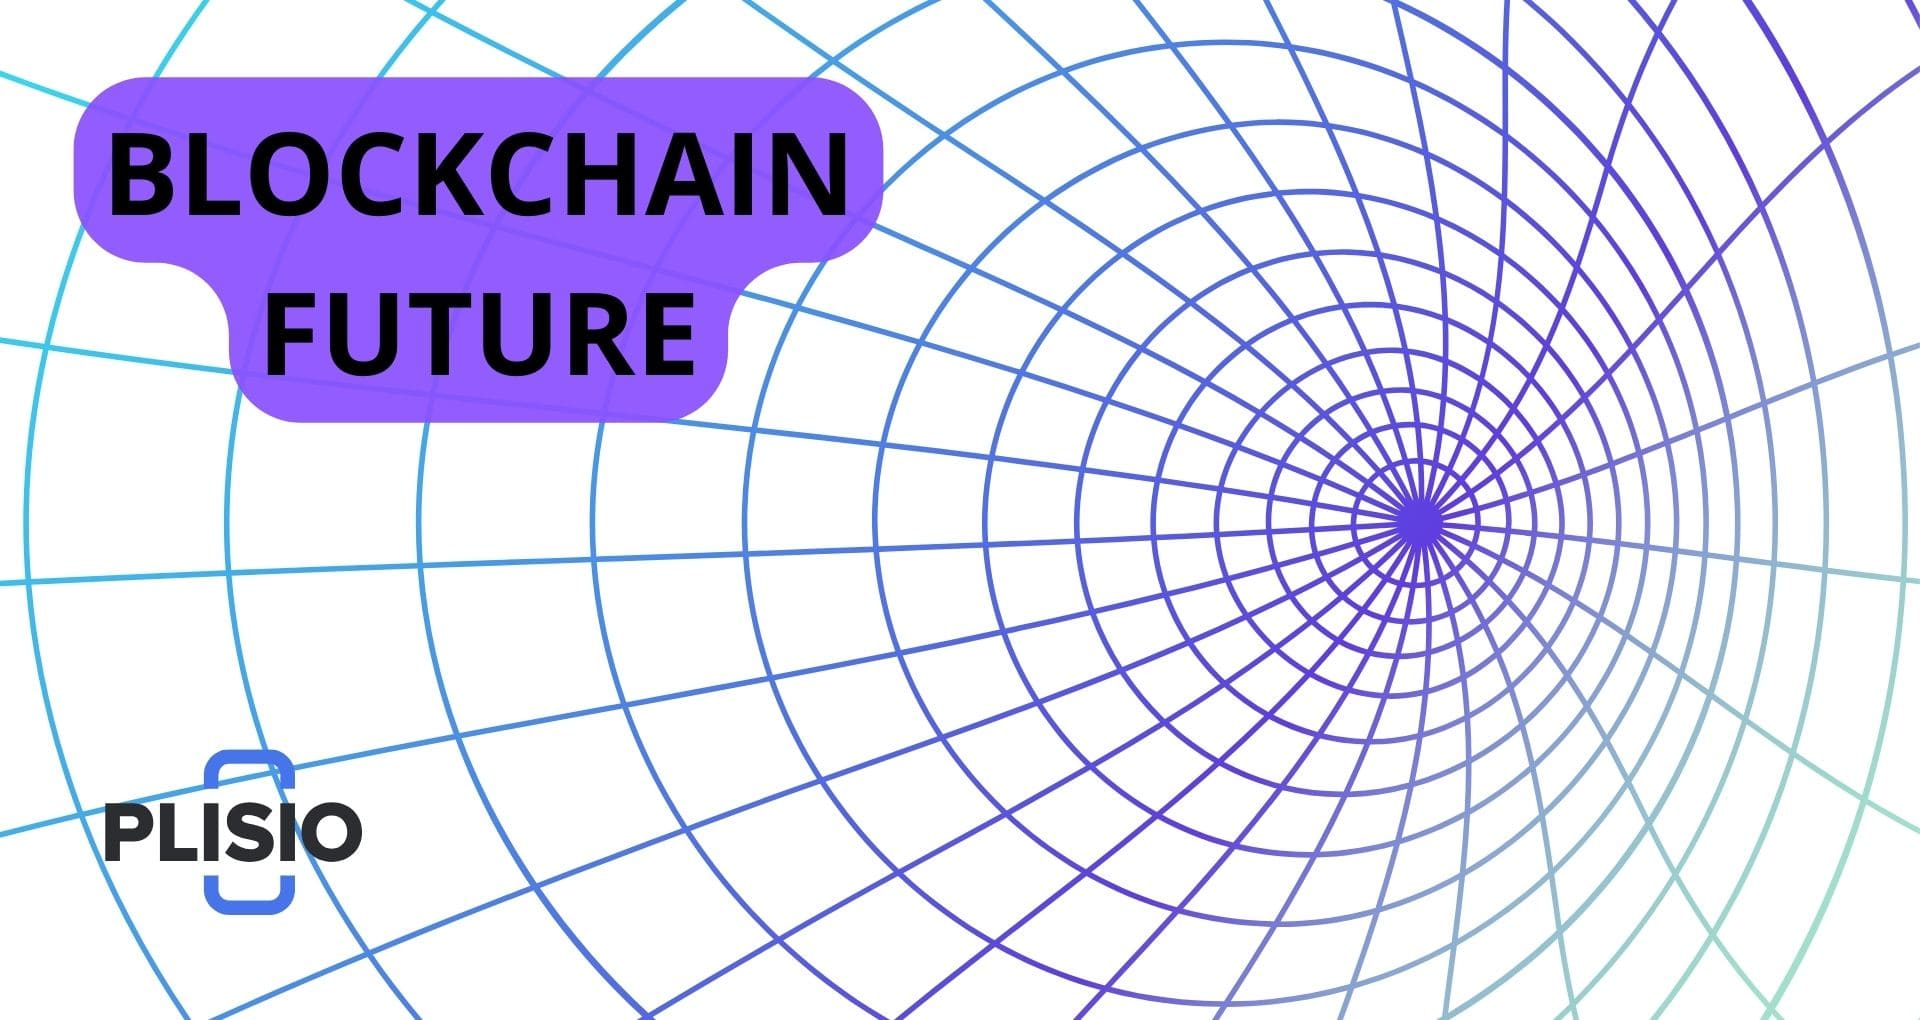 Blockchain-Zukunft: Transformation von 10 Sektoren mit radikaler Innovation